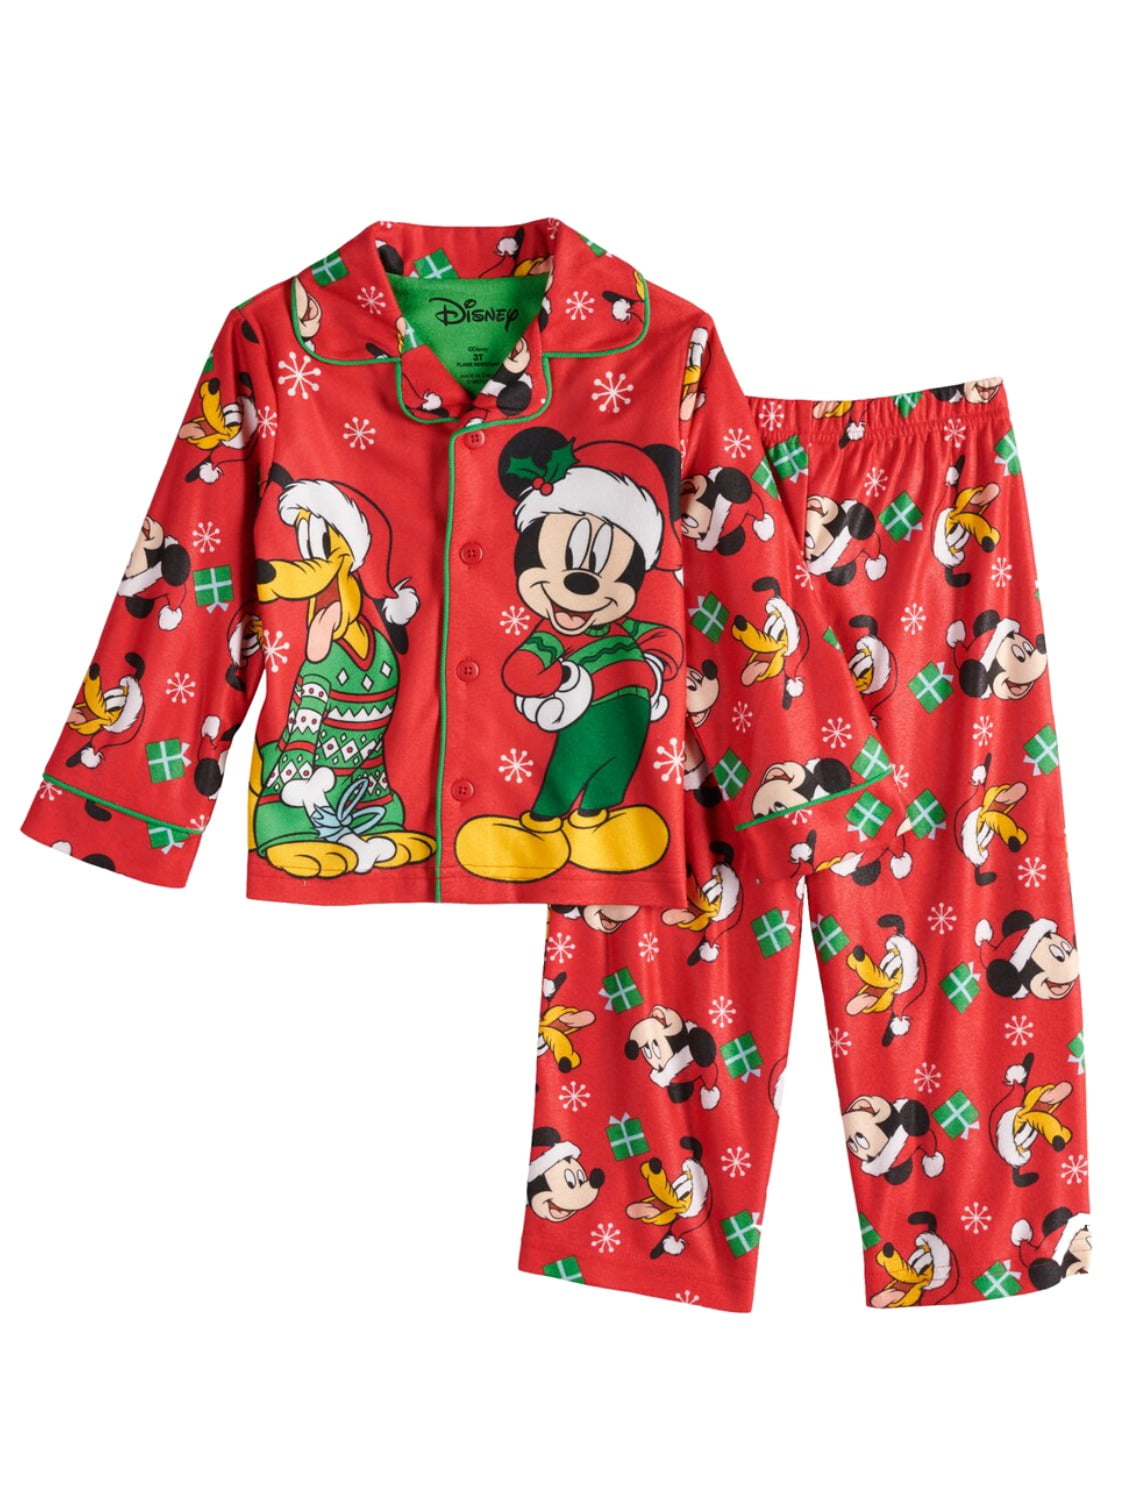 Disney Toddler Boys Mickey & Pluto Red Christmas Button Up Pajamas Sleep Set  2T 